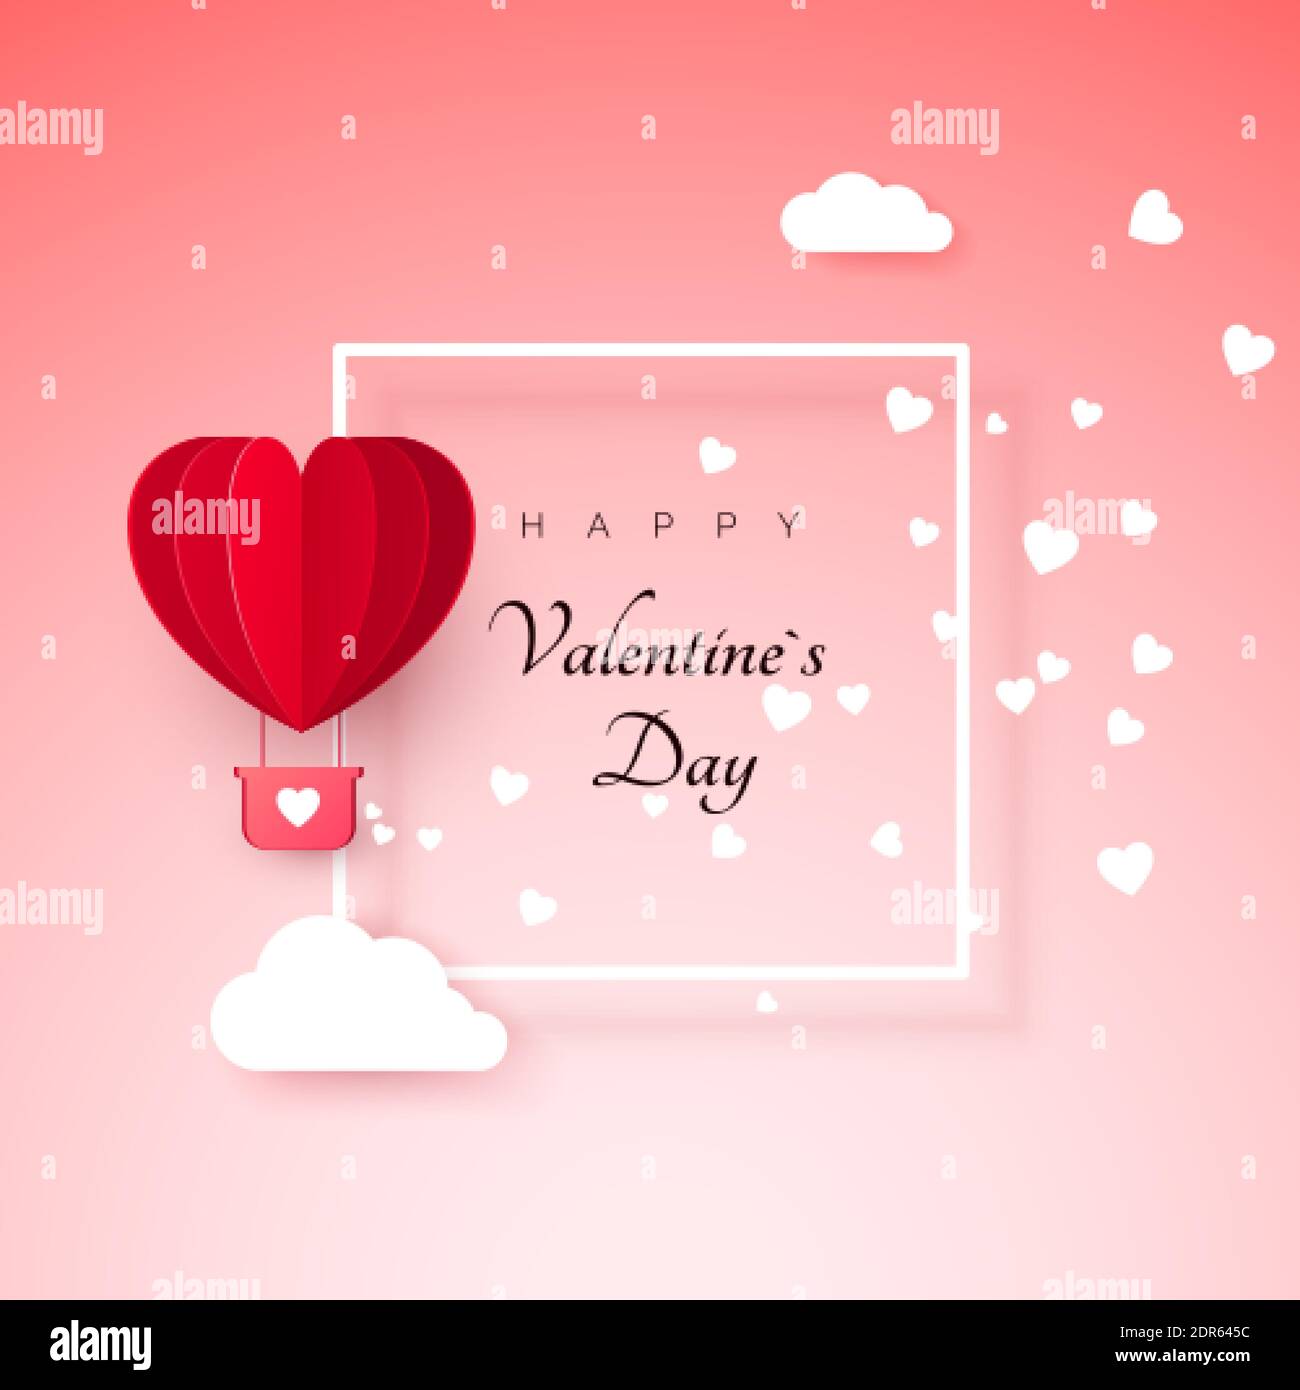 Valentinstag Grußkarte mit Papier geschnitten roten Herz Form Ballon fliegen. Ballon fliegt und hinterlässt eine Spur mit Herzen Dekorationen. Vektorgrafik Stock Vektor